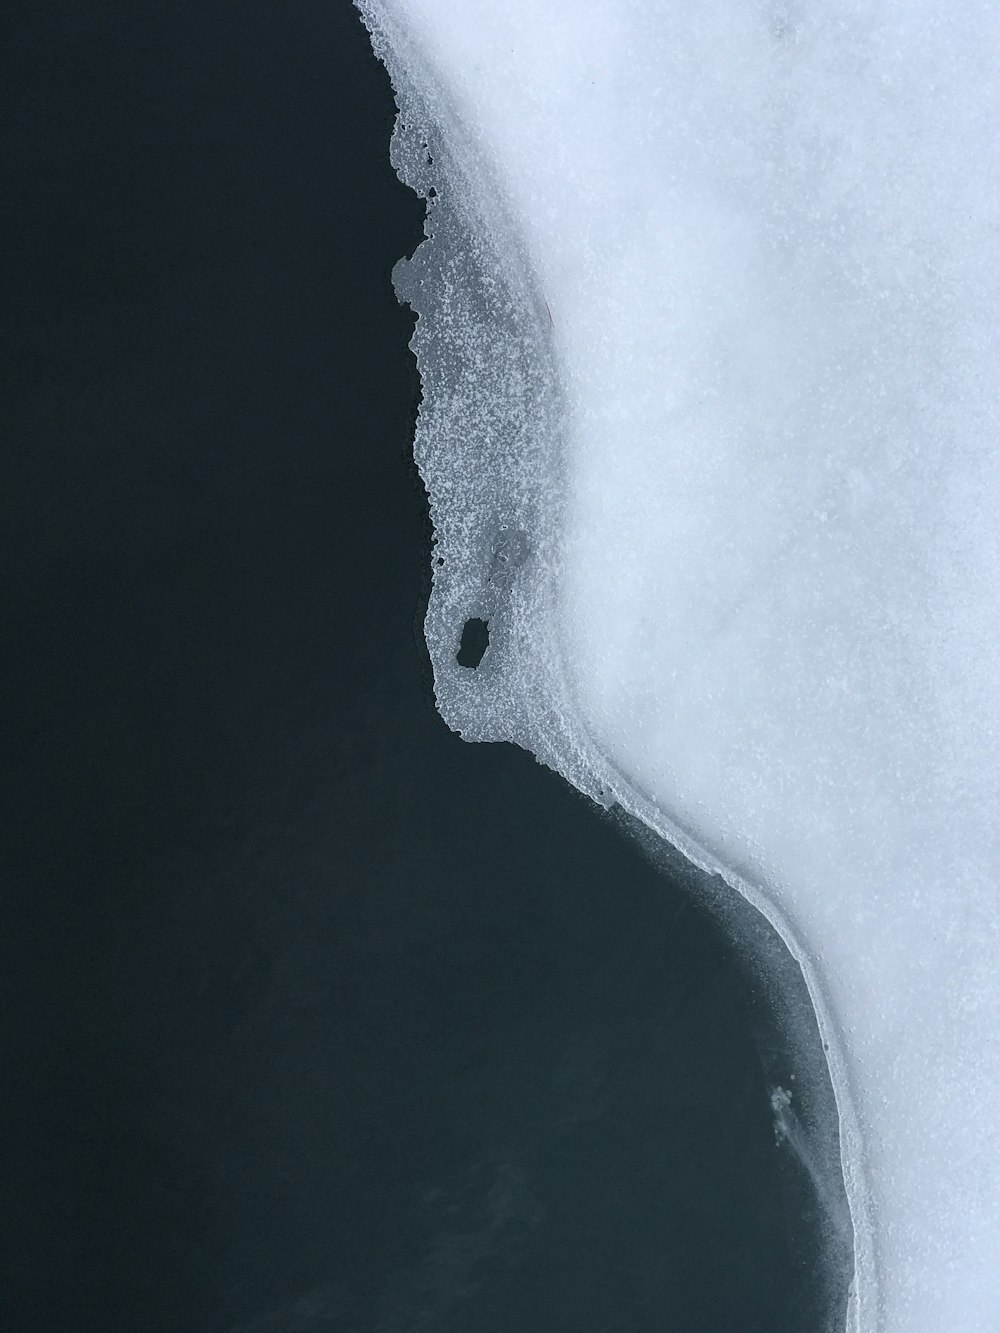 una veduta aerea di uno specchio d'acqua coperto di neve